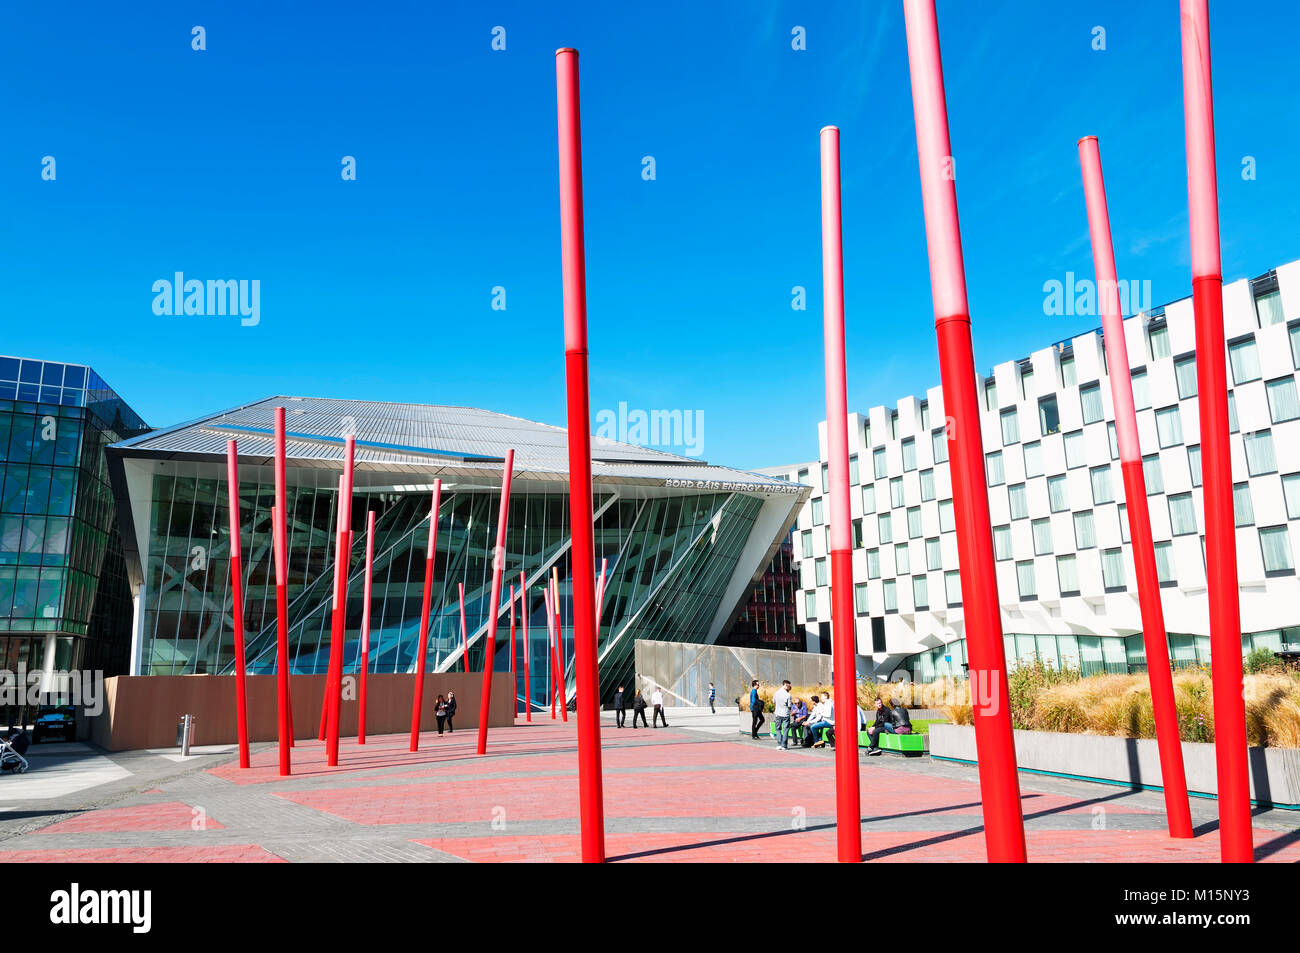 Dettaglio dell'area dei Docklands di Dublino con il Bord Gais teatro in 10. Settembre 2014, Dublino ( Irlanda ) Foto Stock